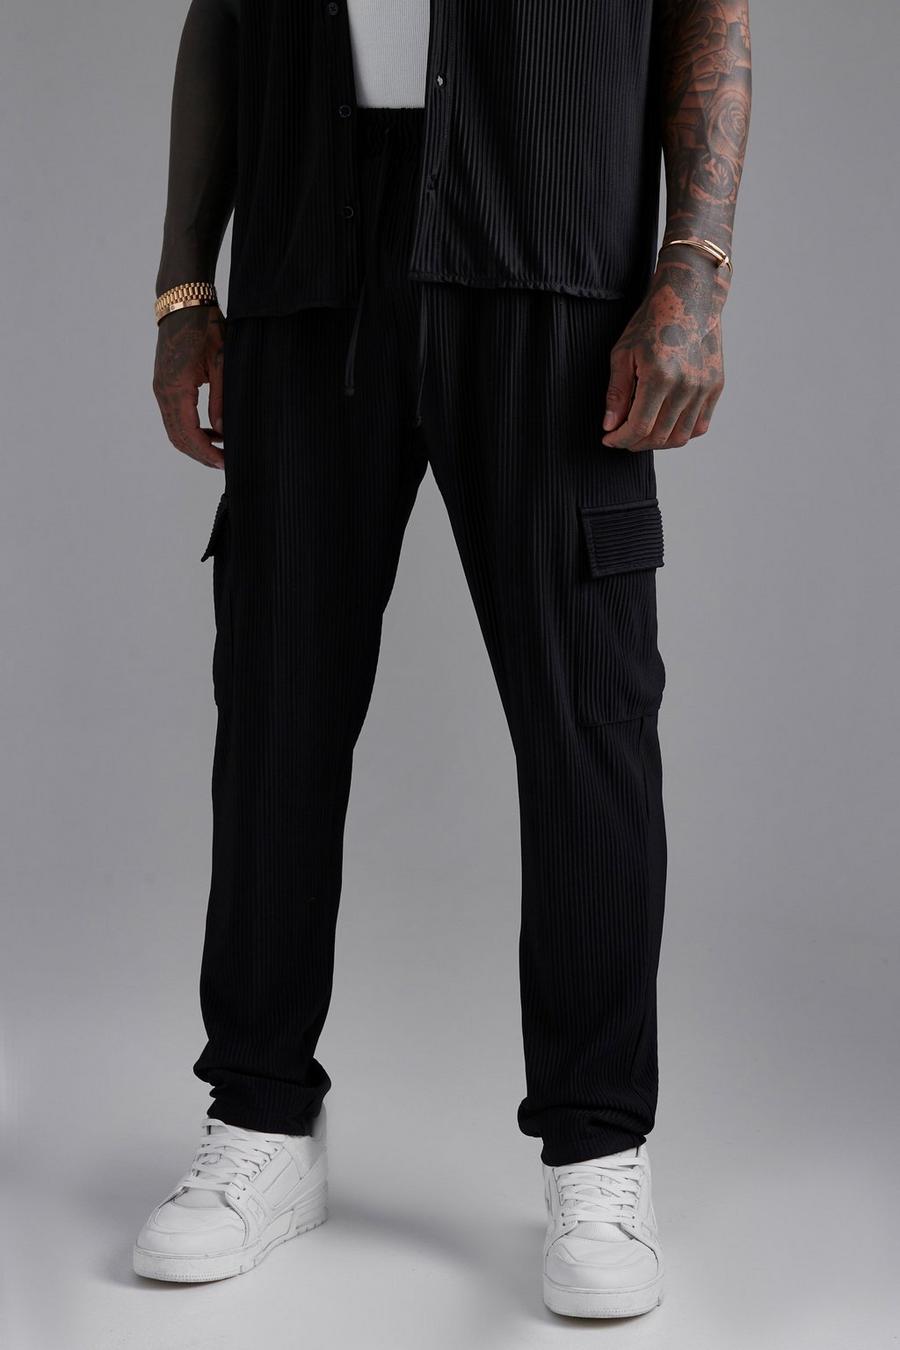 Pantalón cargo plisado ajustado, Black nero